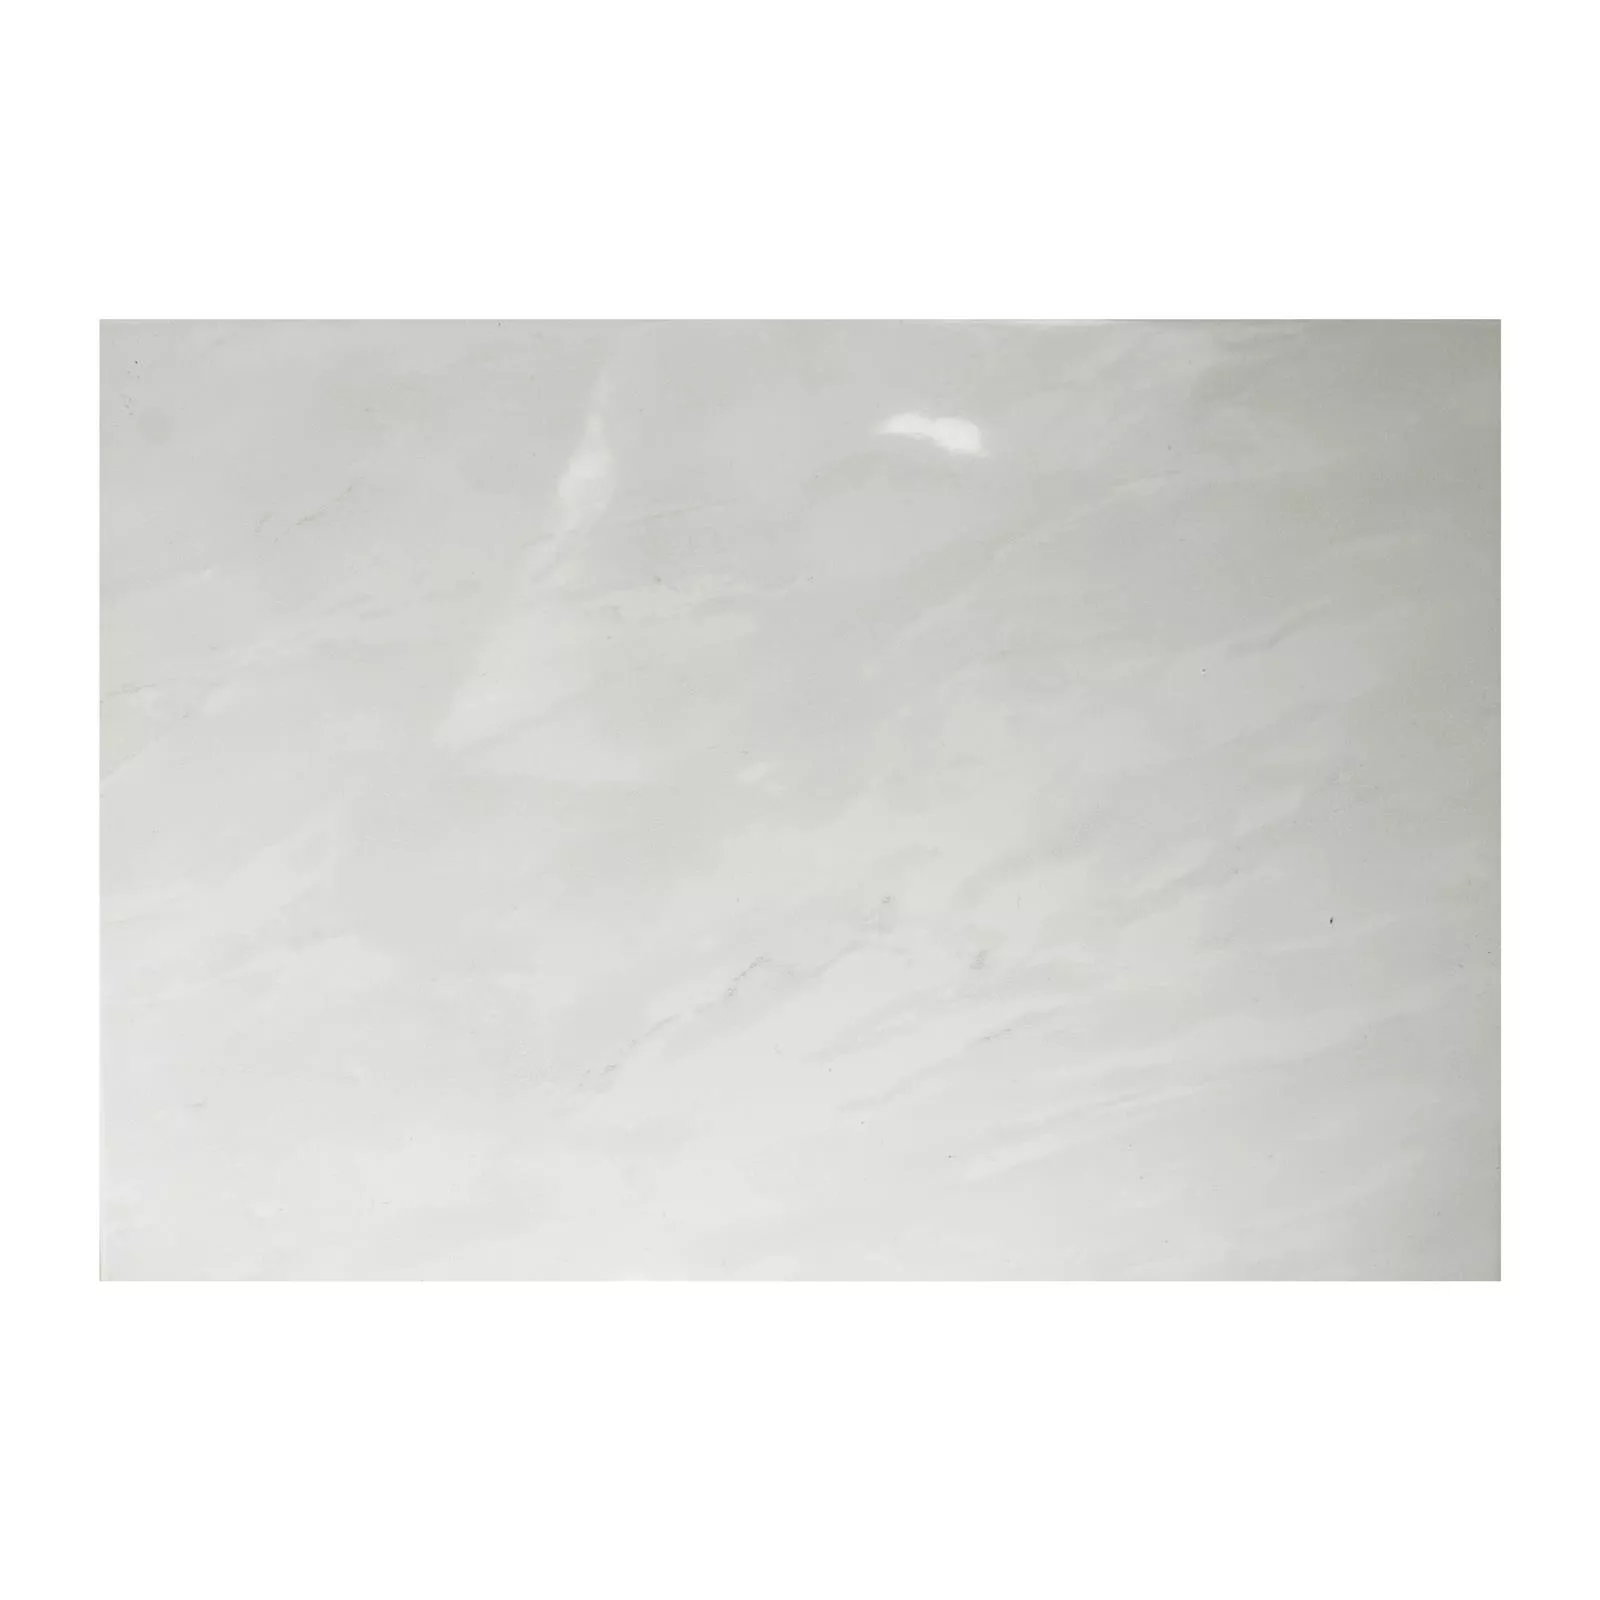 Wall Tile Aspach Marbled Grey 20x25cm Glossy